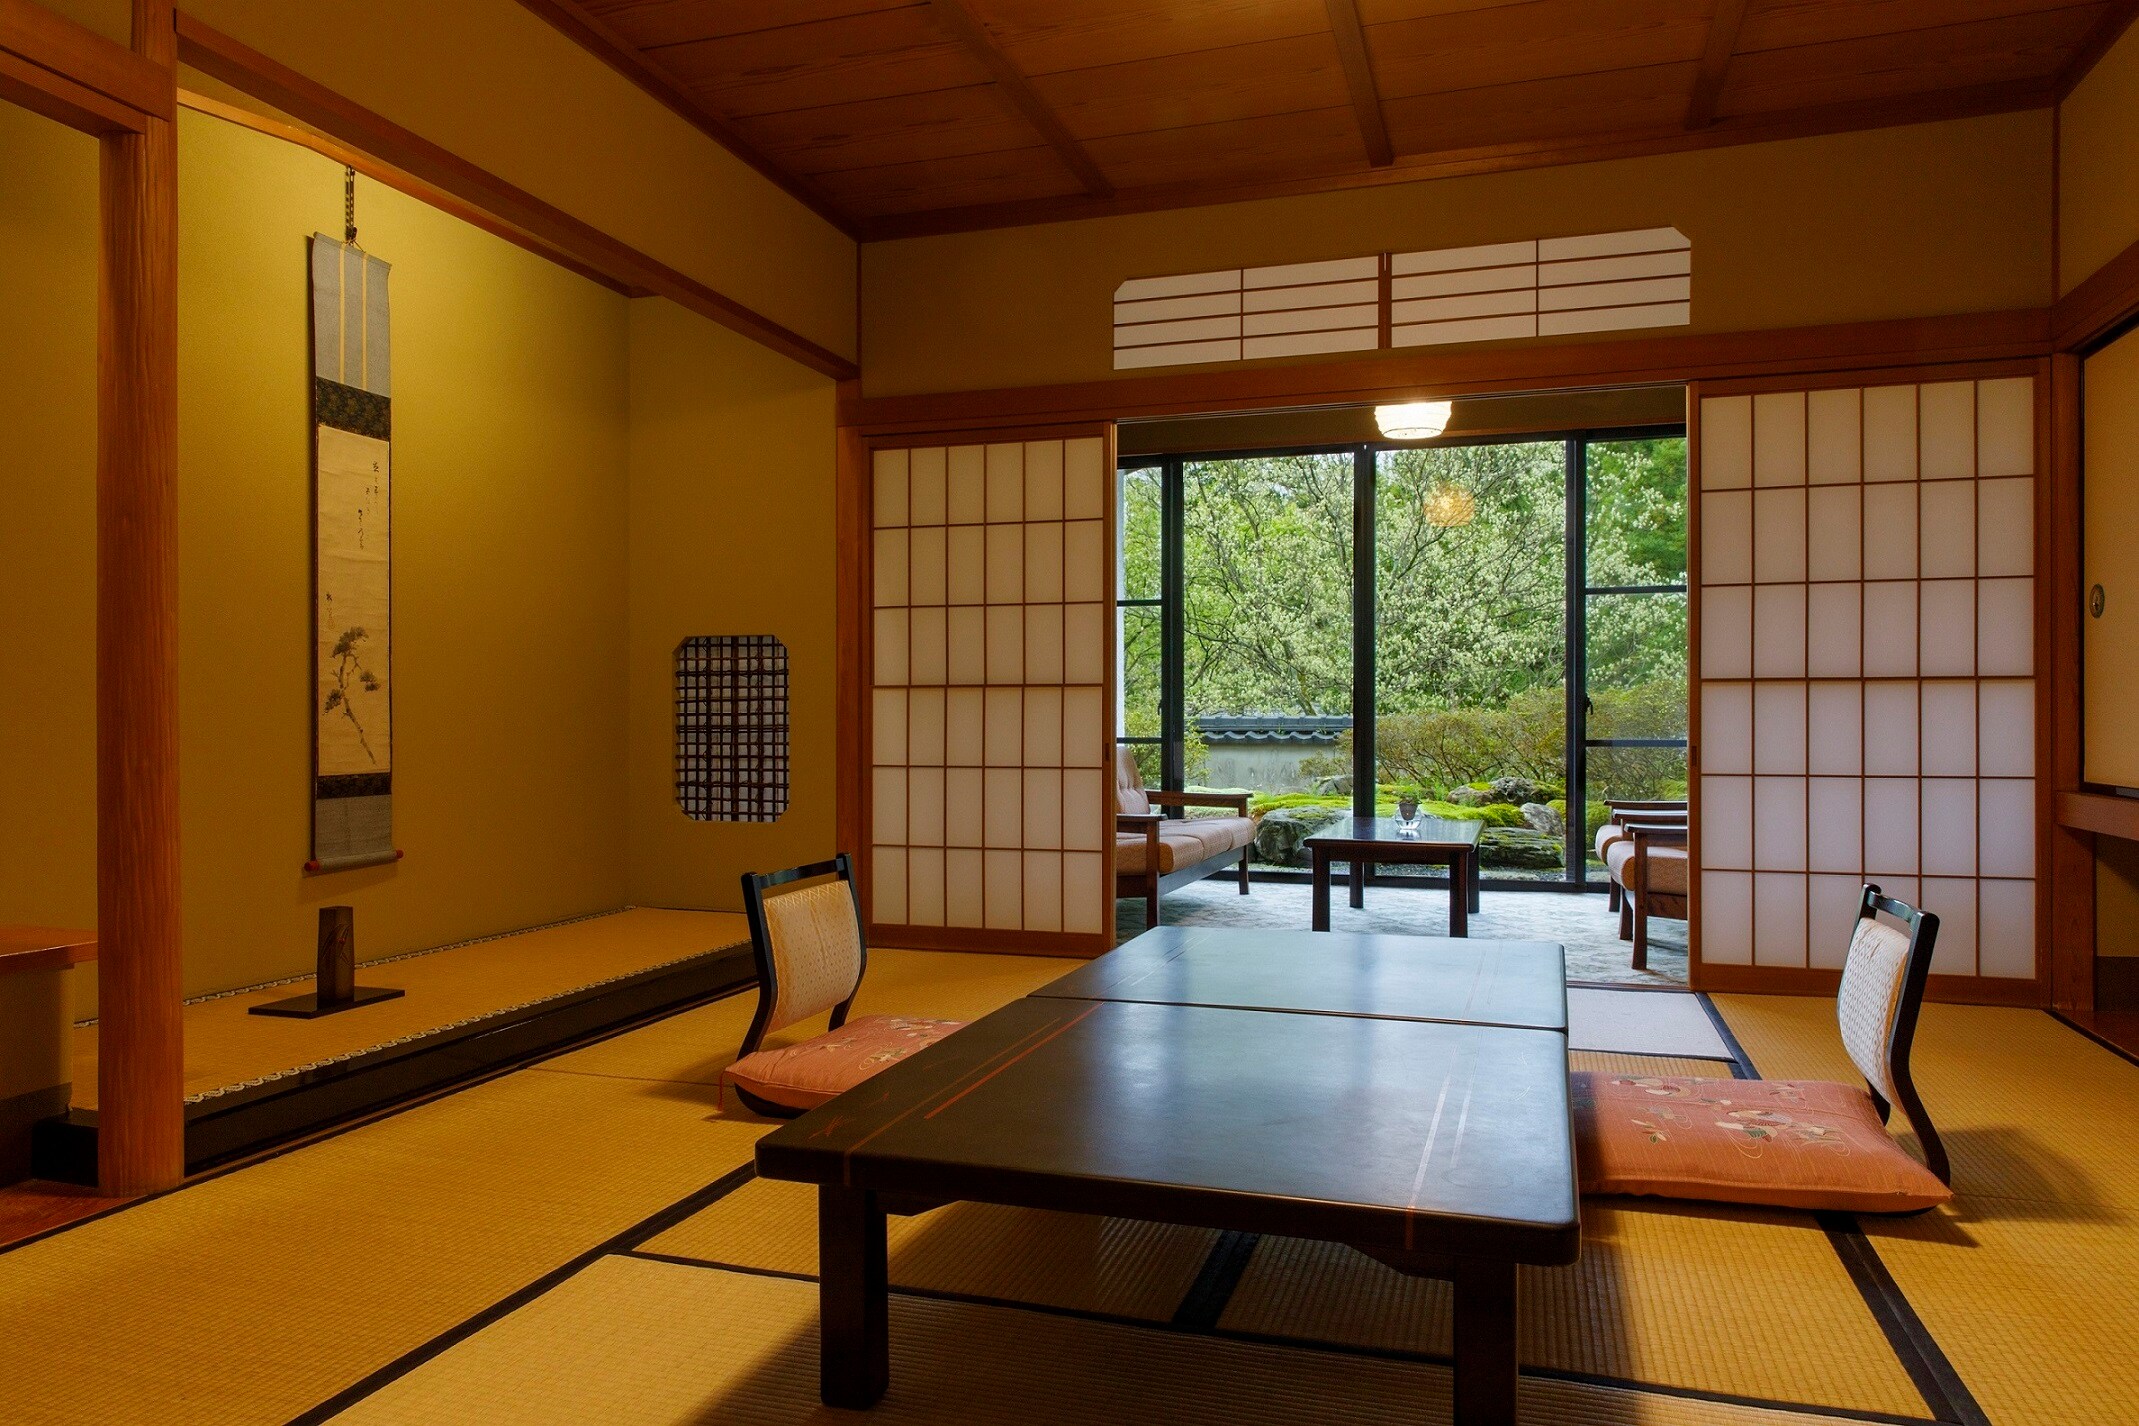 [อาคารหลัก: ห้องสไตล์ญี่ปุ่น 10 ถึง 12.5 เสื่อทาทามิ] (ตัวอย่าง) ห้องสไตล์ญี่ปุ่นล้วนที่มีรูปลักษณ์ที่สงบ